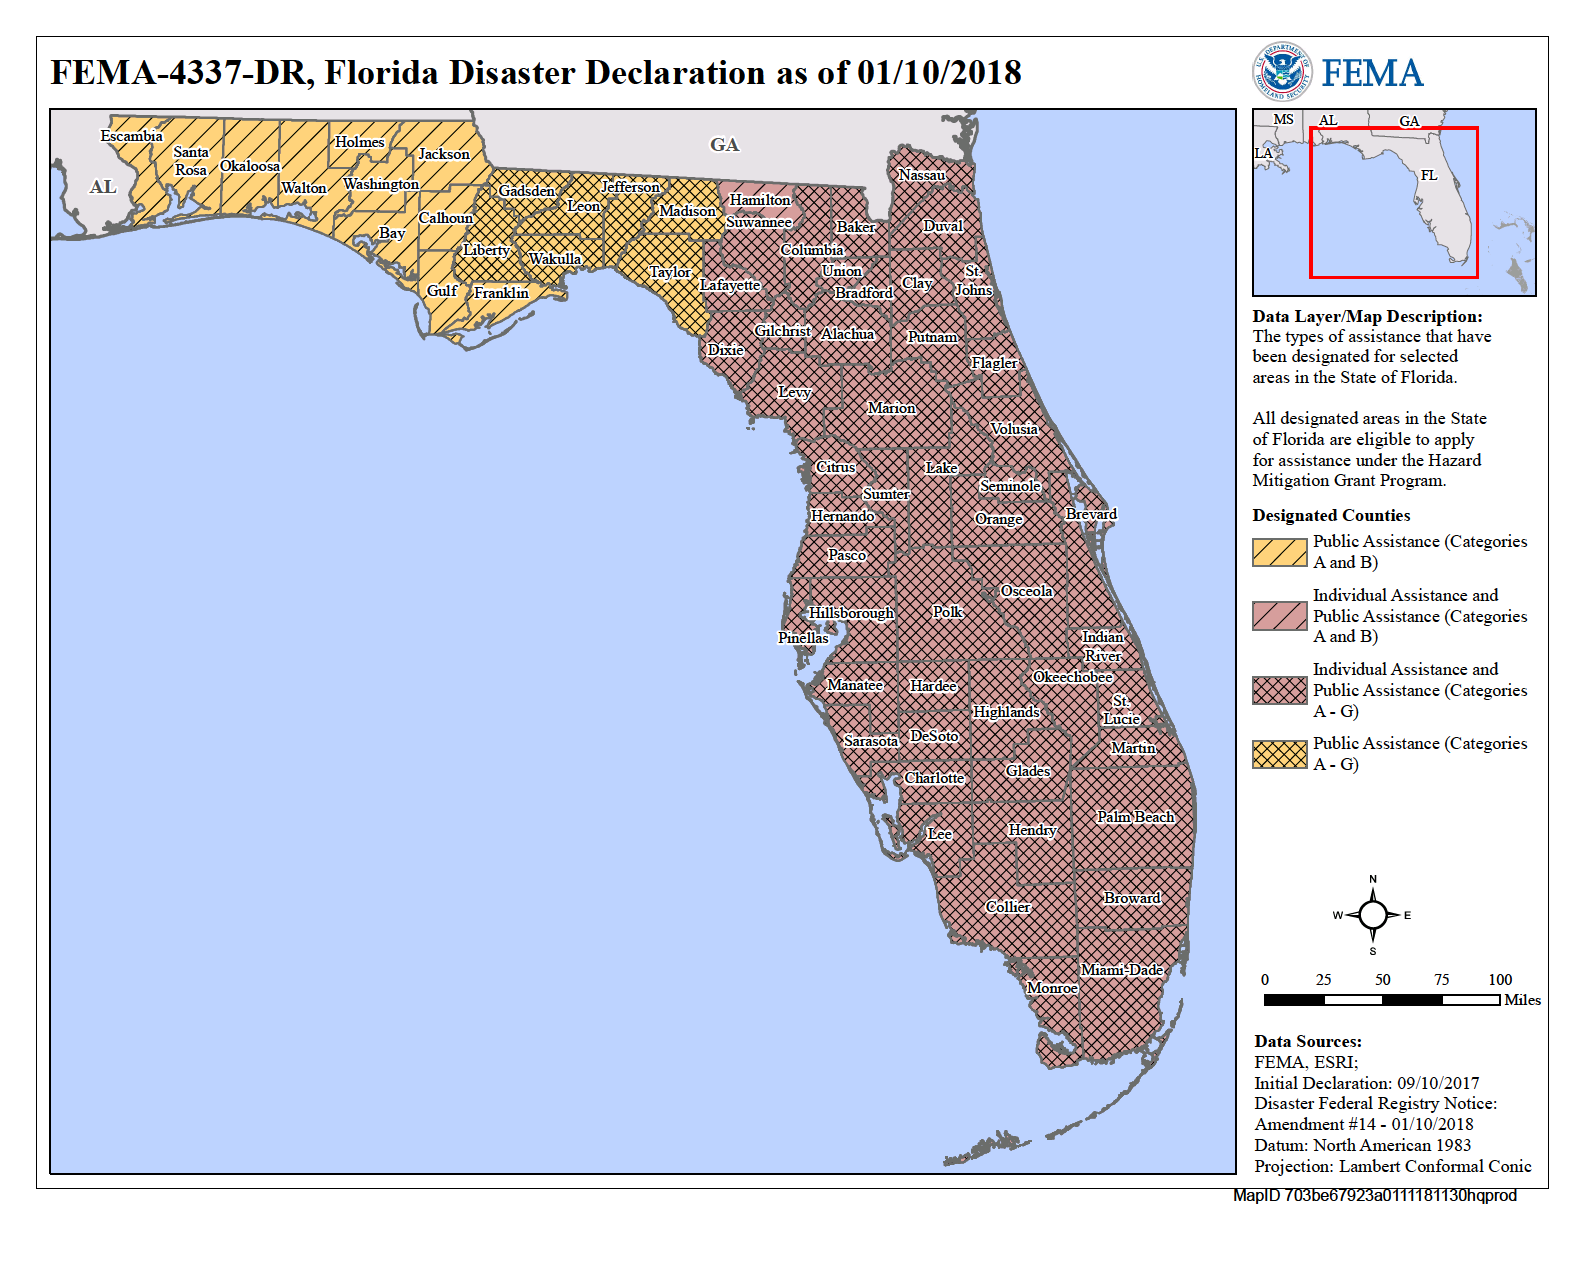 Florida Hurricane Irma Dr 4337 Fema Gov